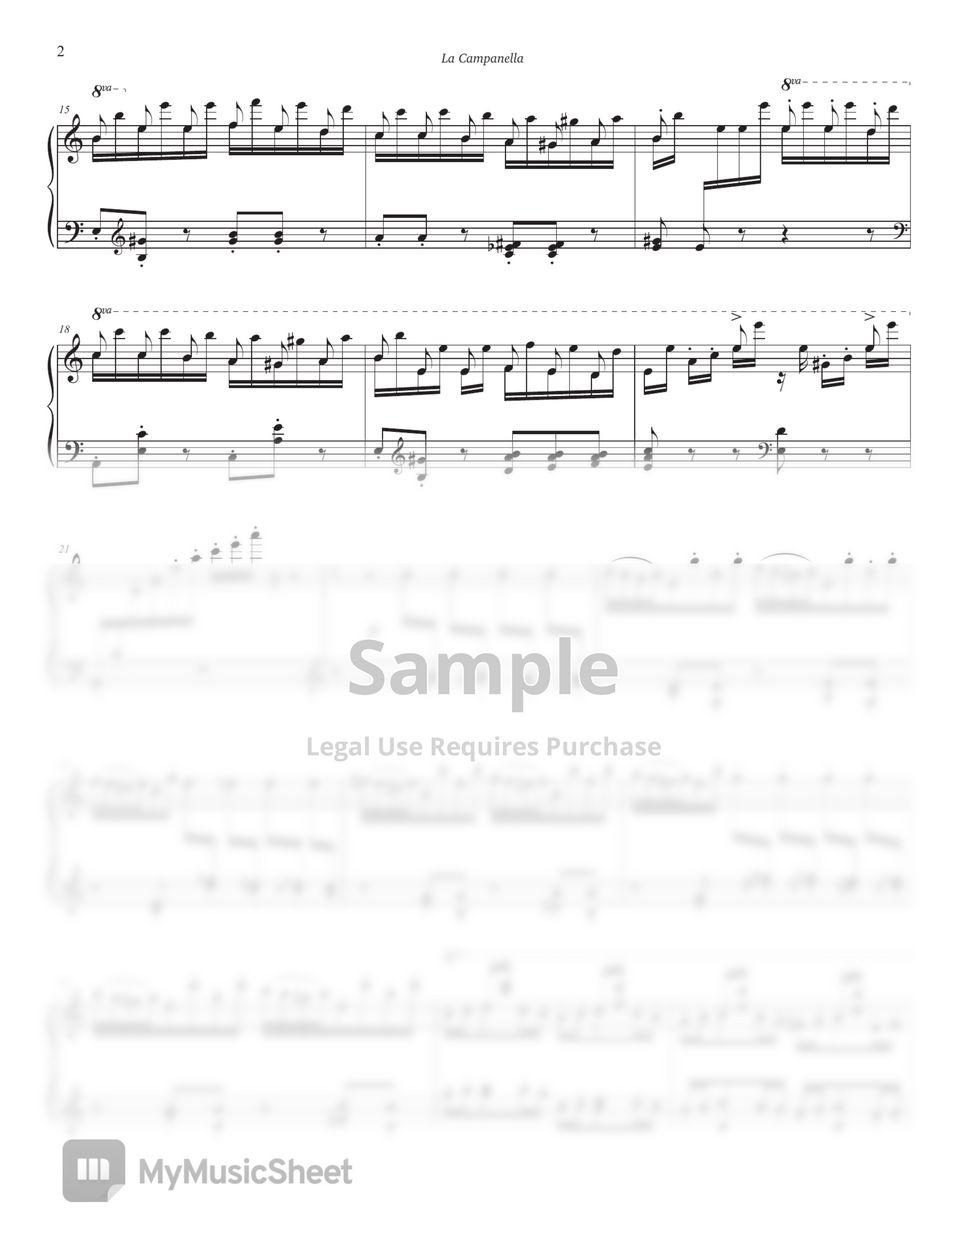 F. Liszt - La Campanella (Intermediate Level, Am key) by Jinnie J